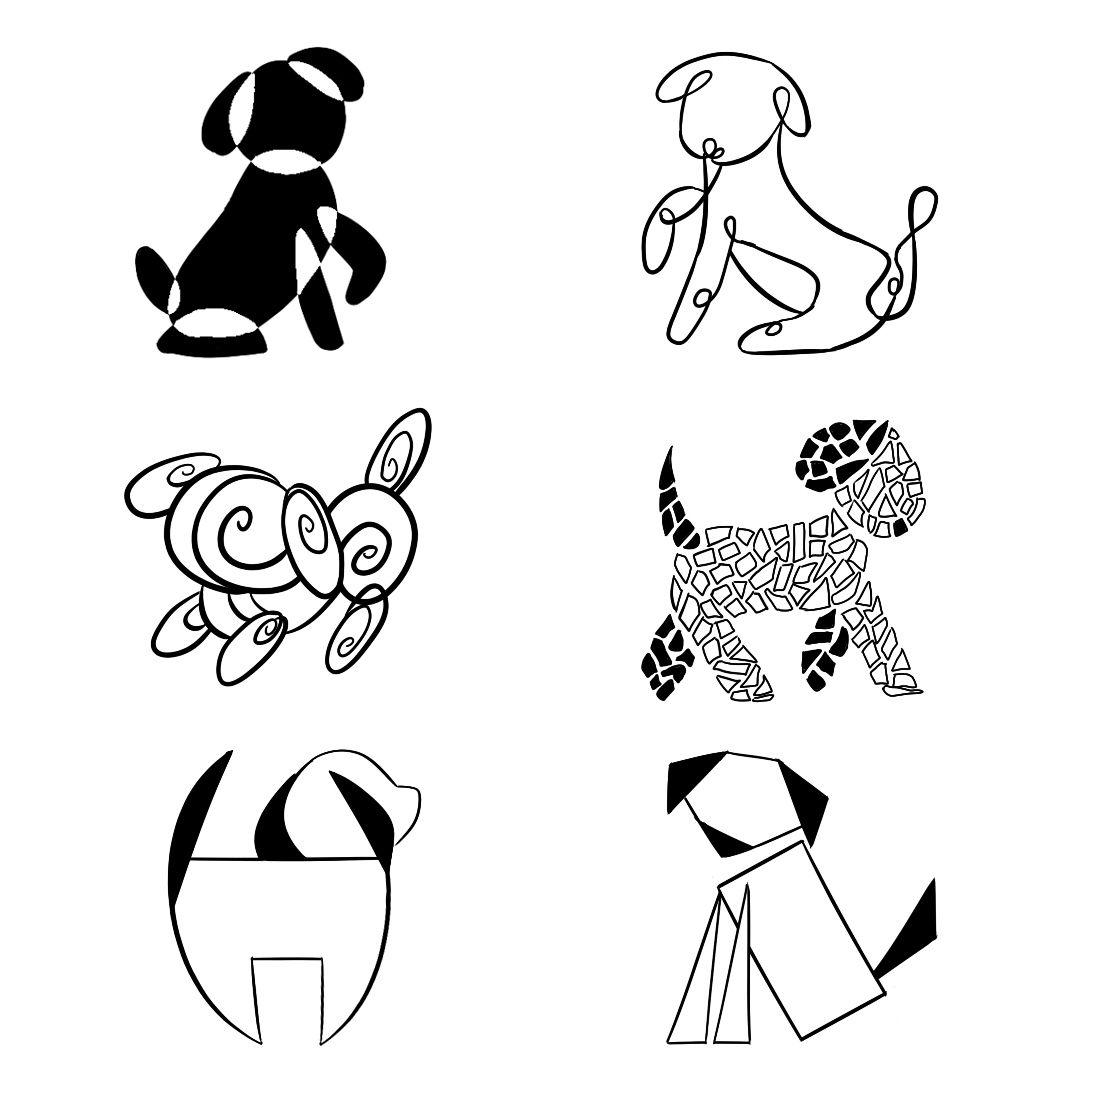 Graphic Dog Illustrations.